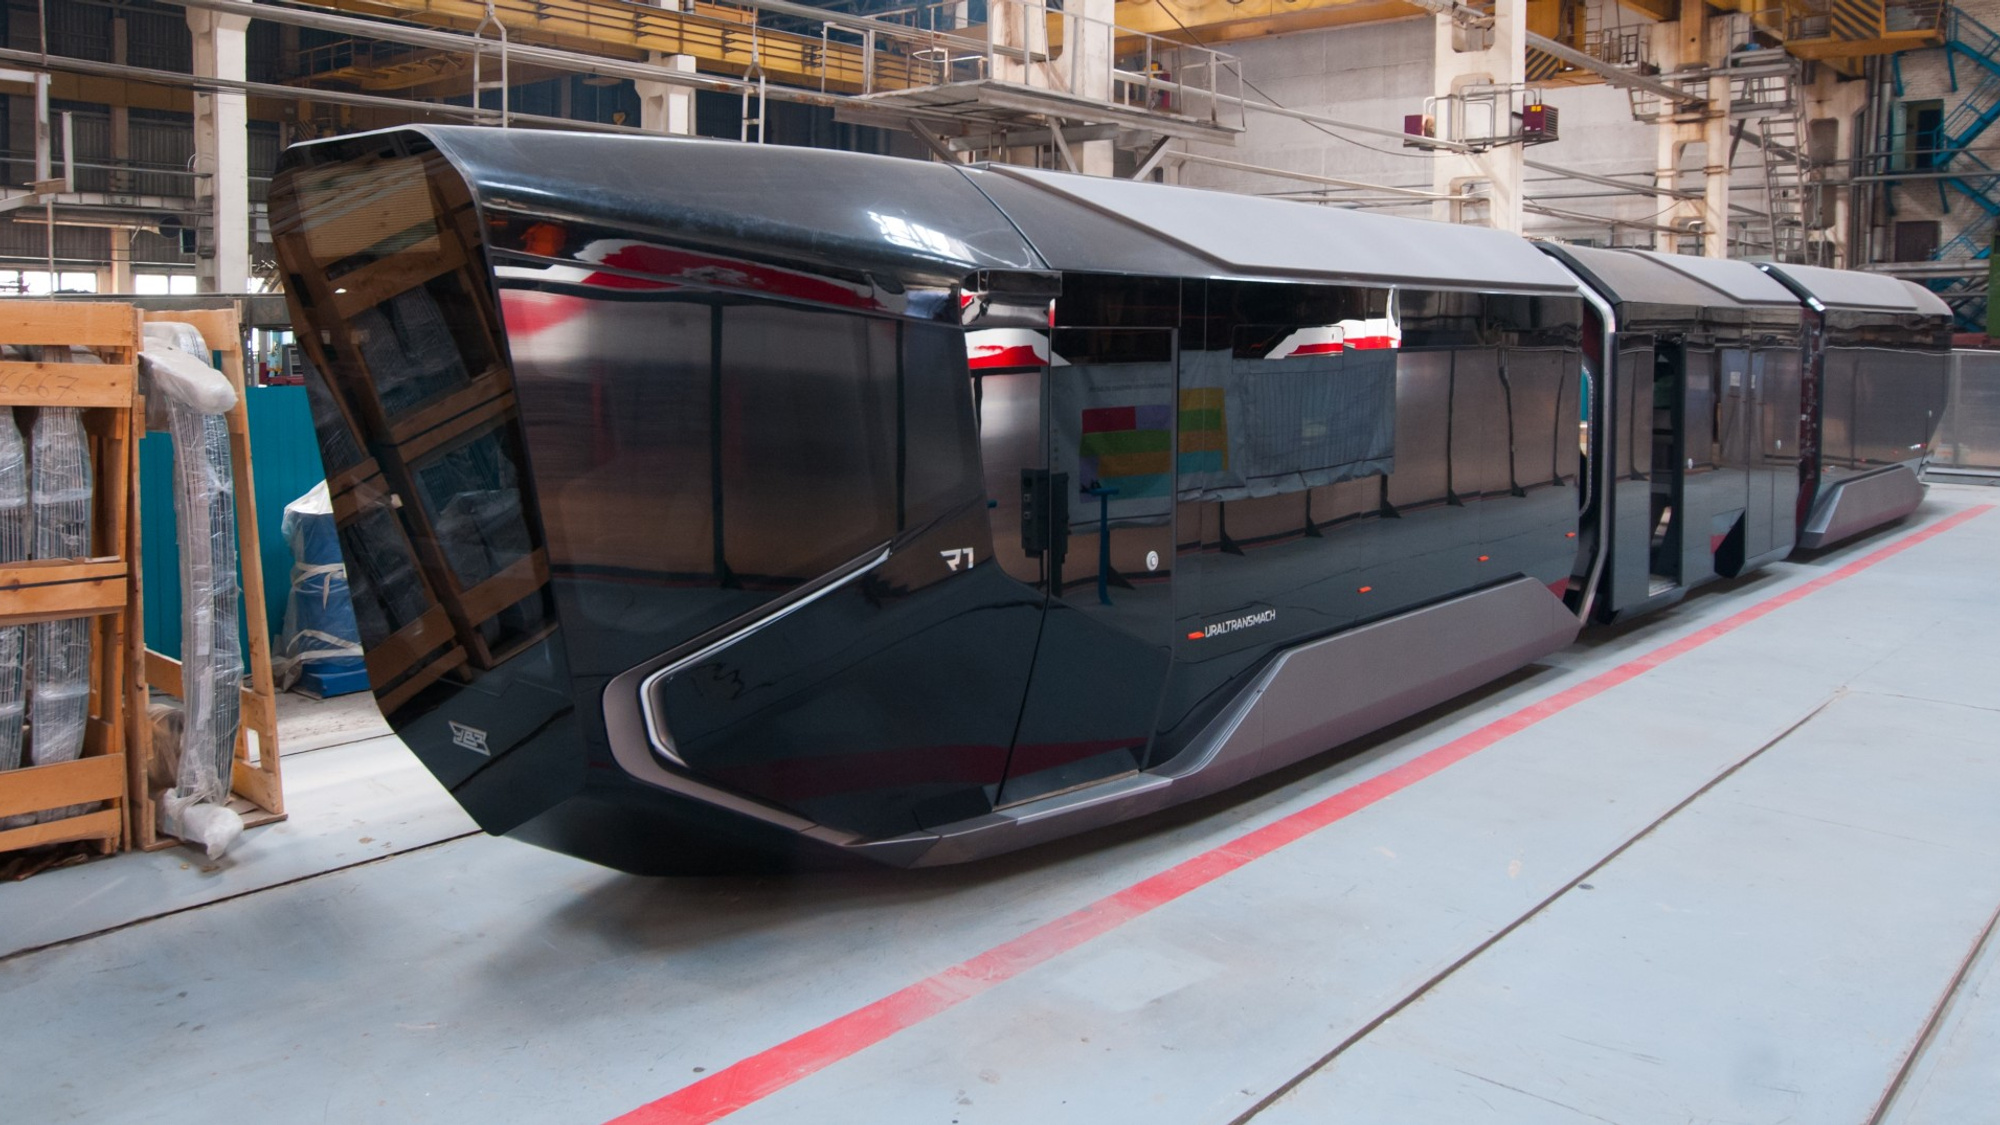 "Айфон на колёсах" останется мечтой: уральский нанотрамвай отказались запускать в серийное производство